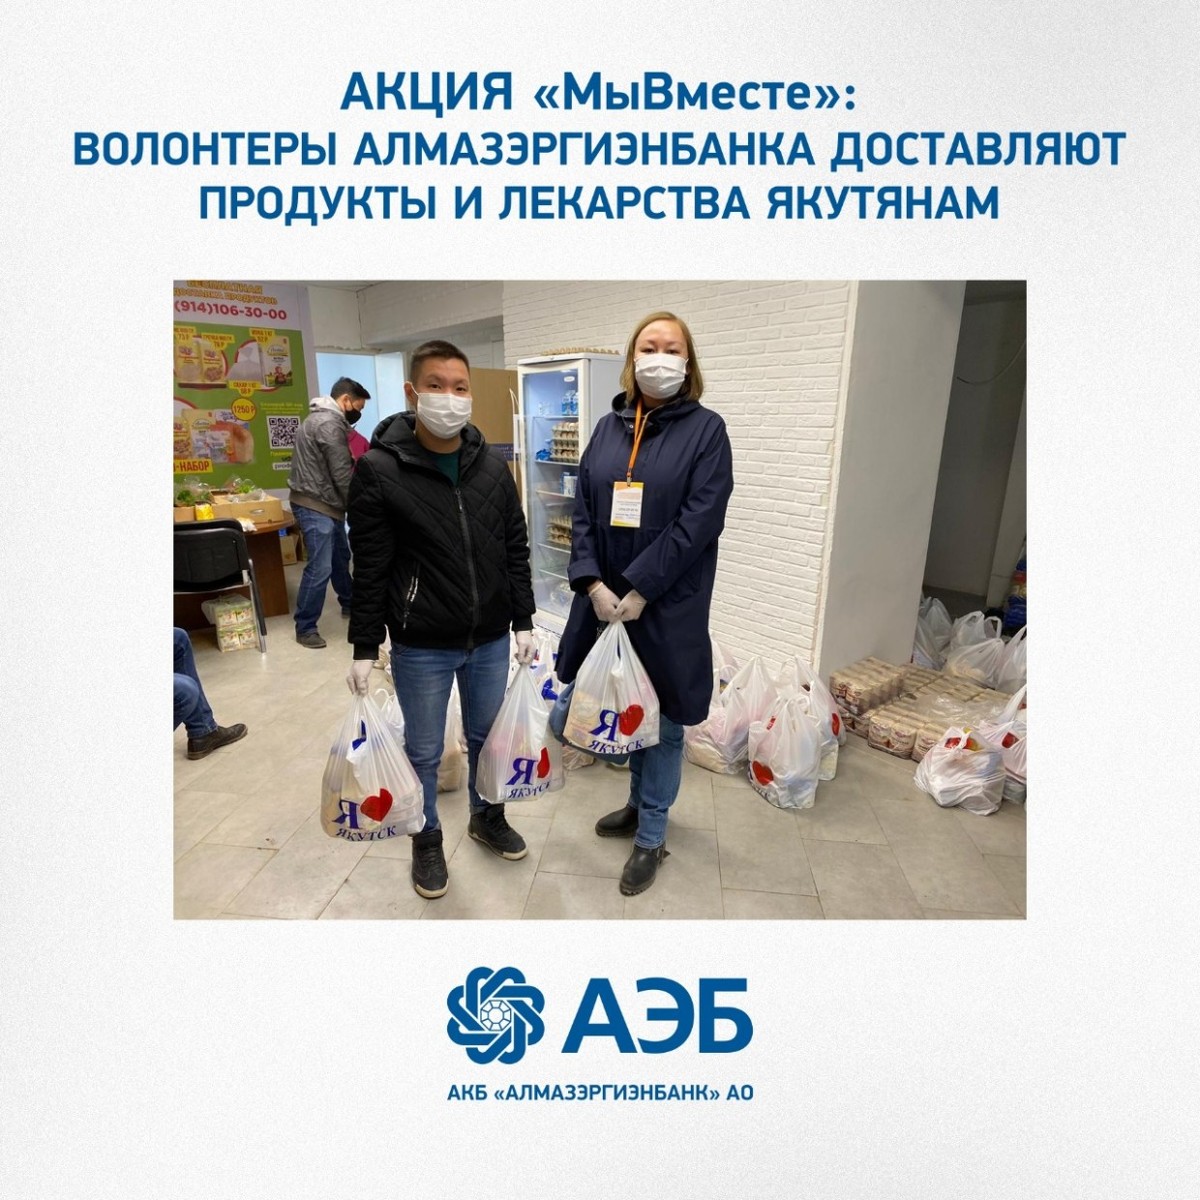 Акция «МыВместе»: Волонтеры Алмазэргиэнбанка доставляют продукты и лекарства якутянам